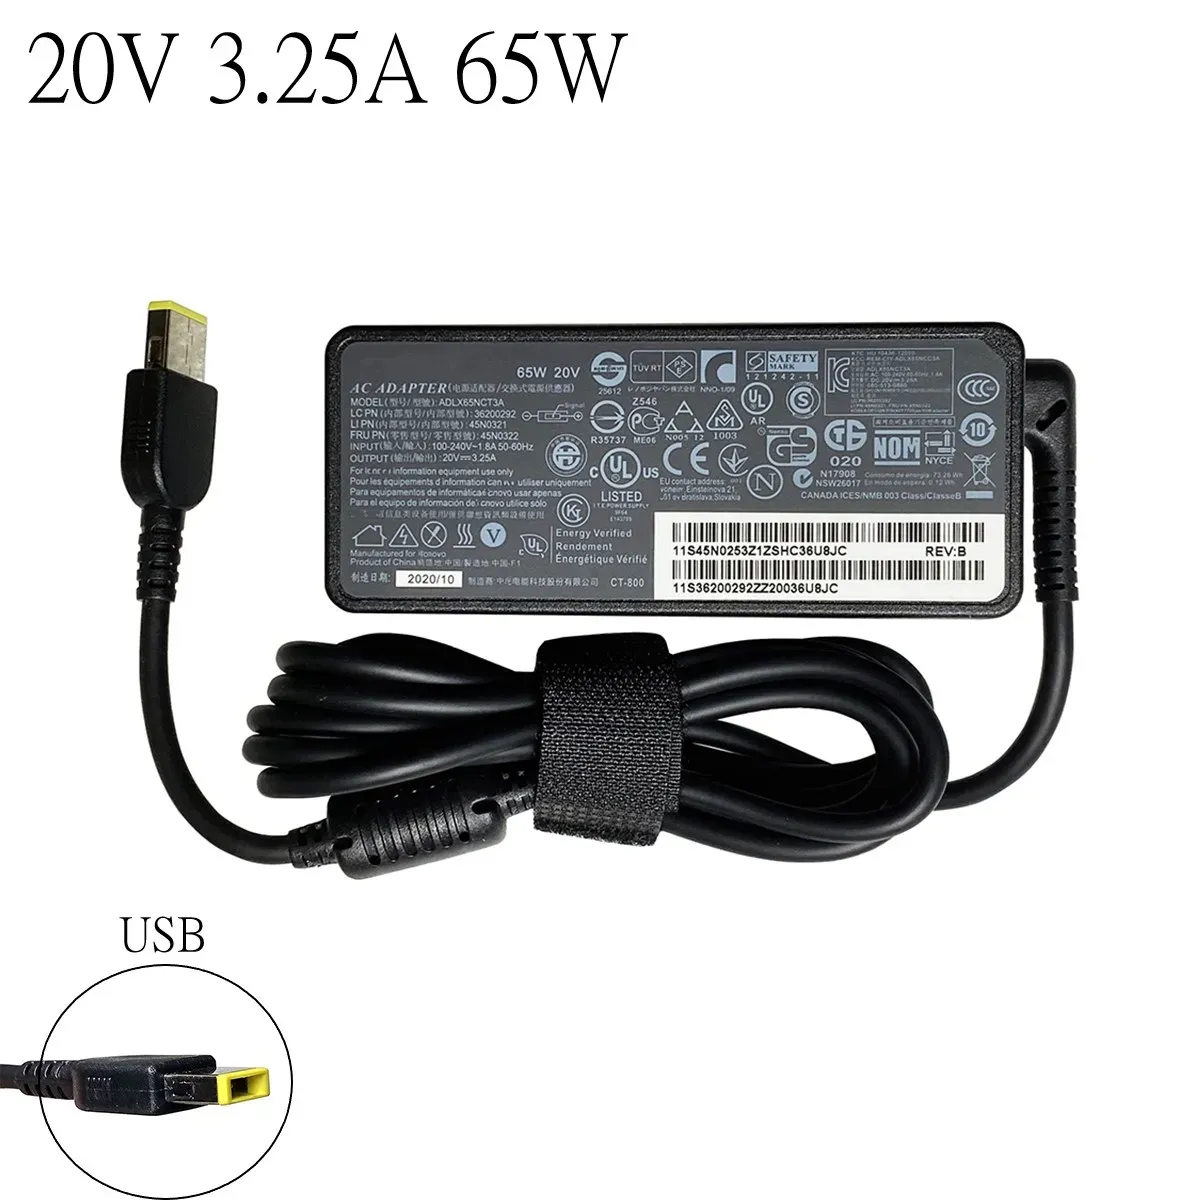 Адаптер переменного тока, 20 В, 3,25 А, 65 Вт, зарядное устройство для ноутбука Lenovo X1 Carbon E431 E531 S431 T440s T440 X230s X240 X240s G410 G500 G505